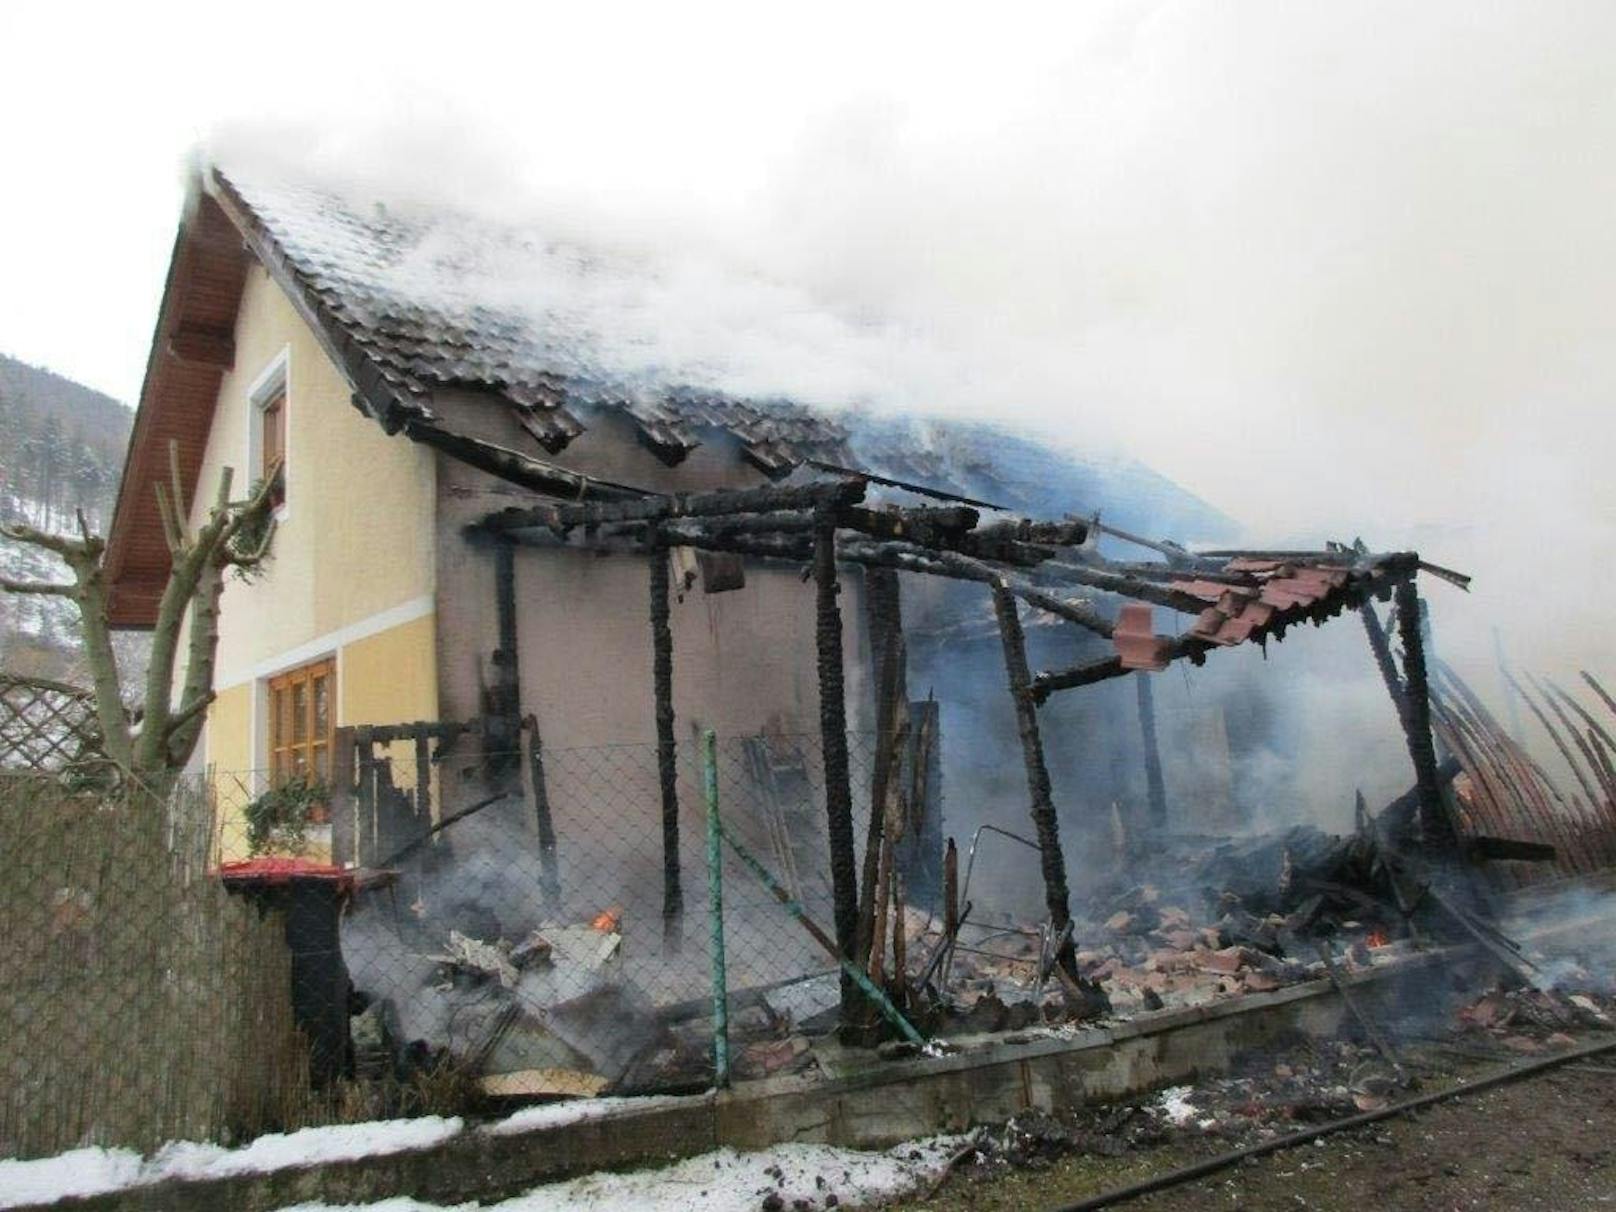 Das Haus wurde schwer beschädigt, der Besitzer konnte sich noch rechtzeitig ins Freie retten und blieb unverletzt.